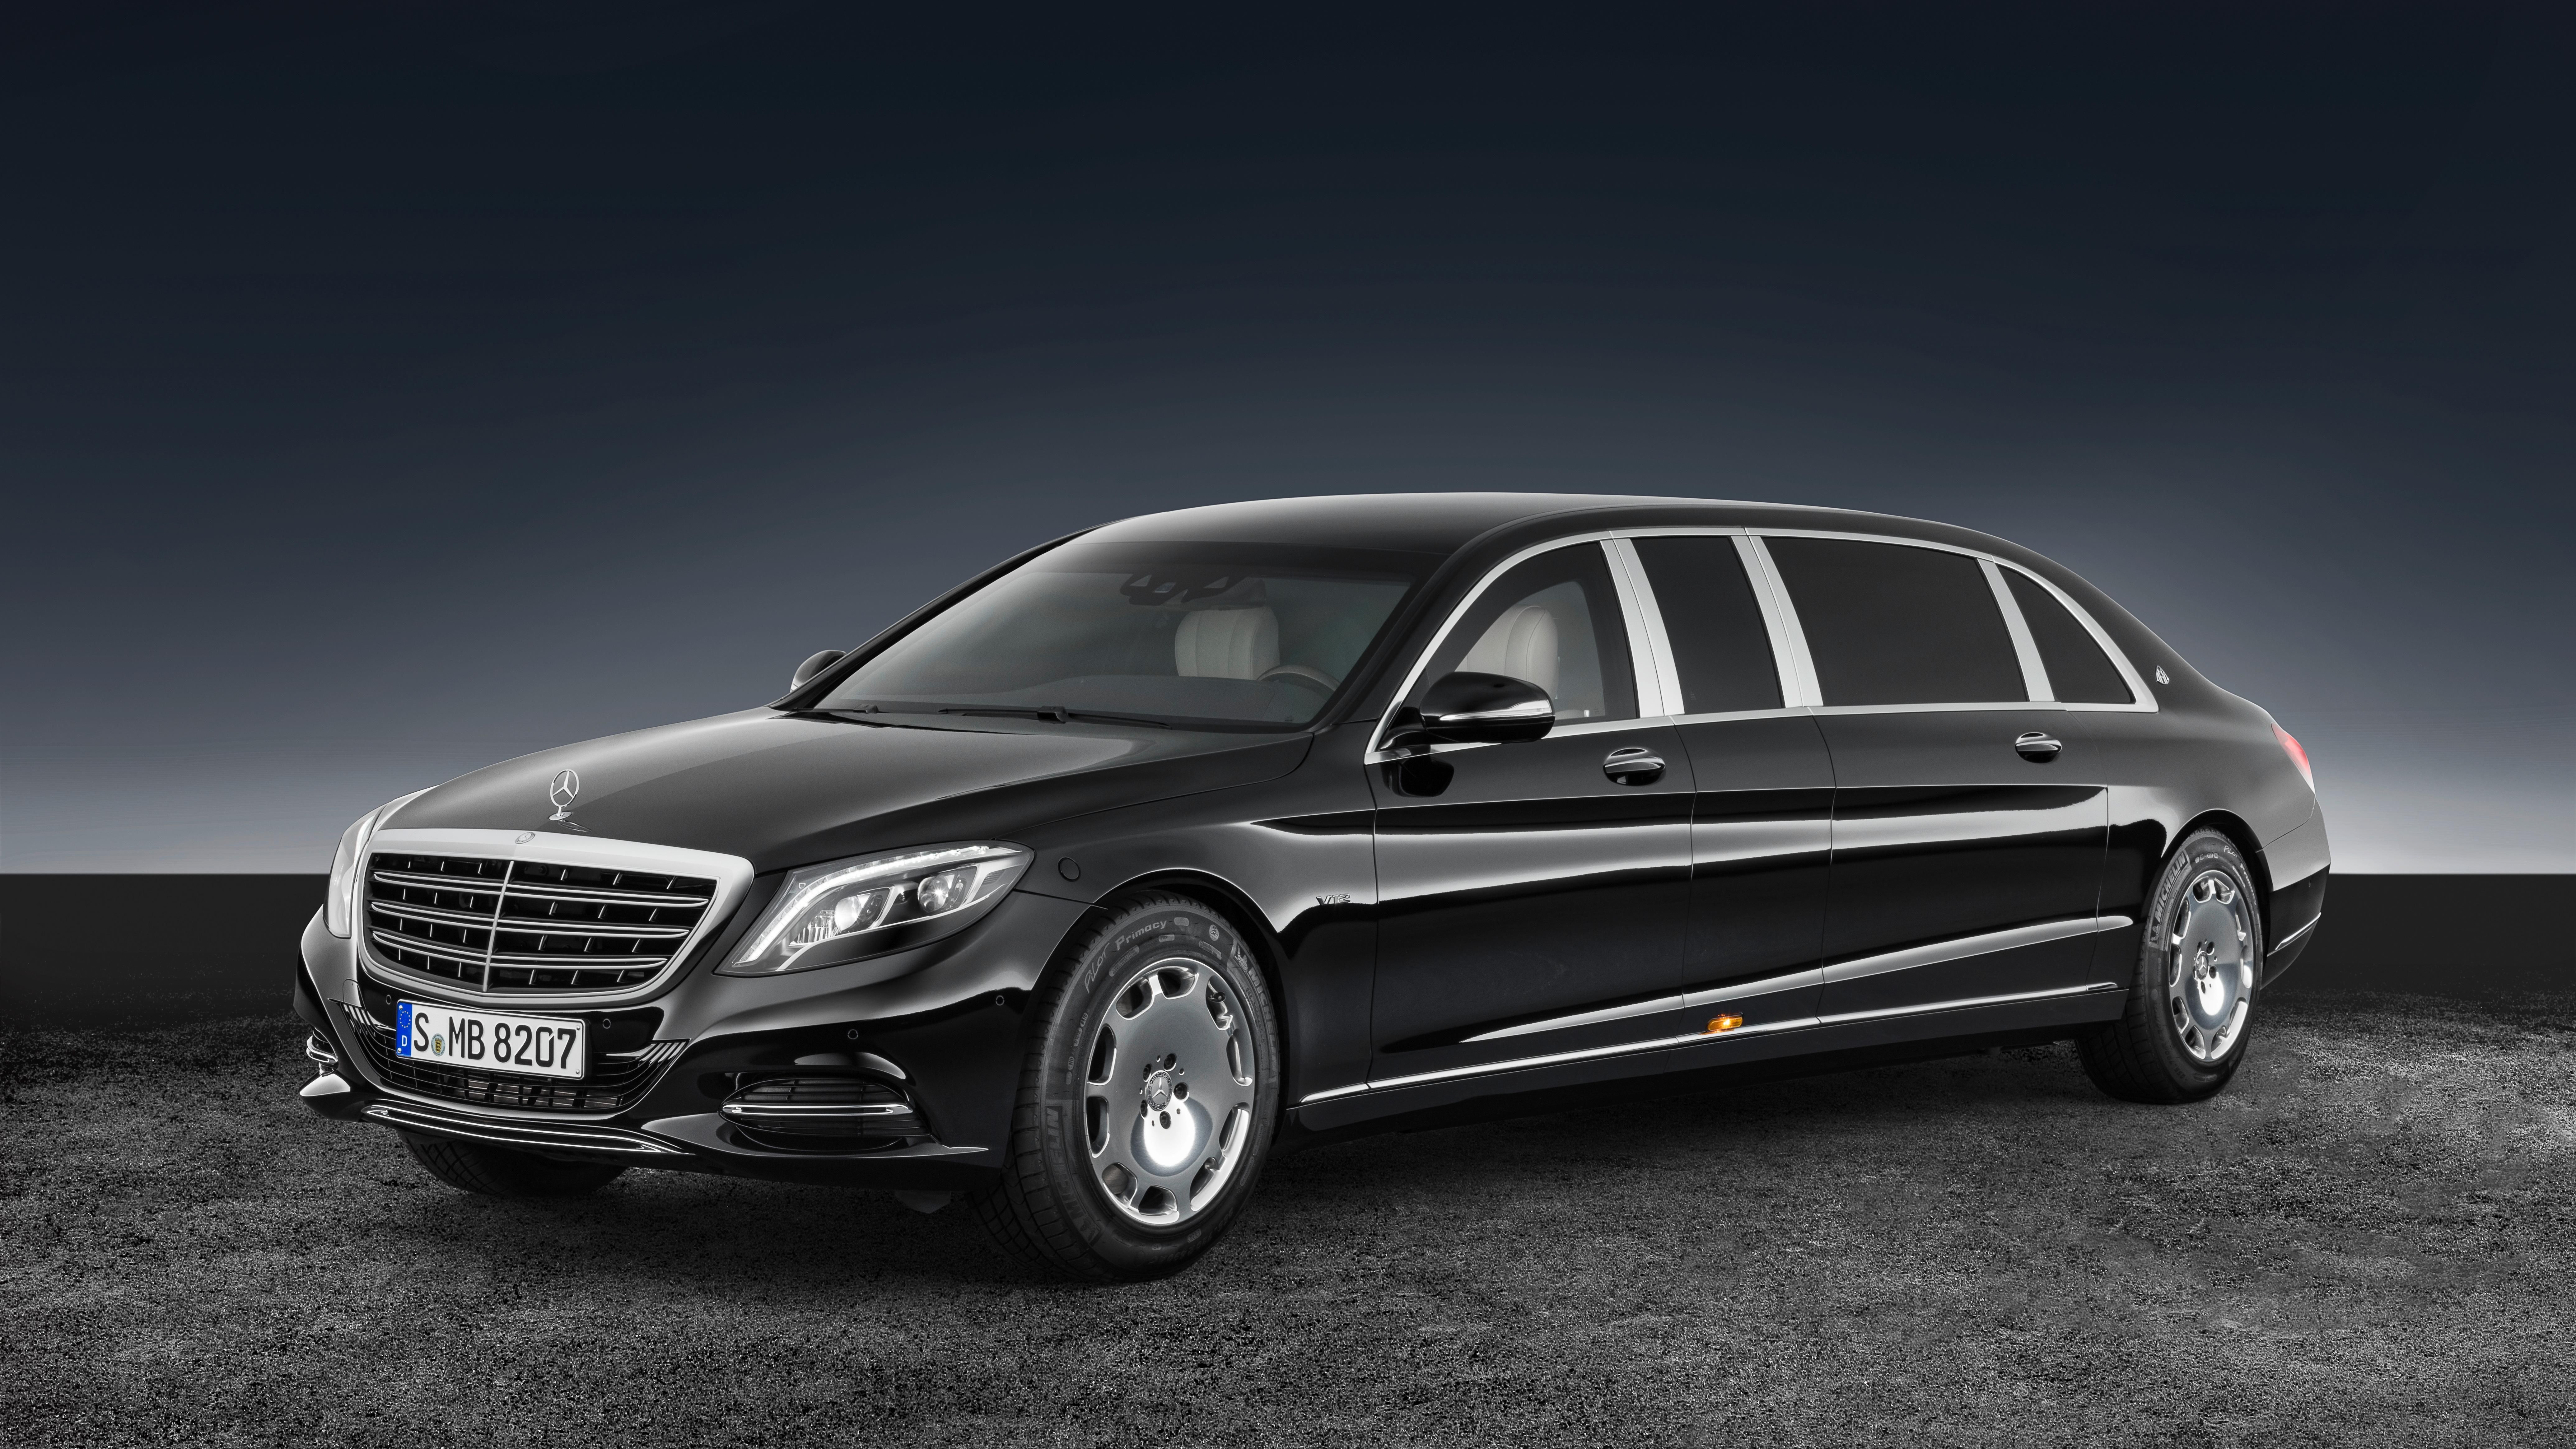 Как выглядит бронированный Mercedes за $ 1,6 млн изнутри: фото